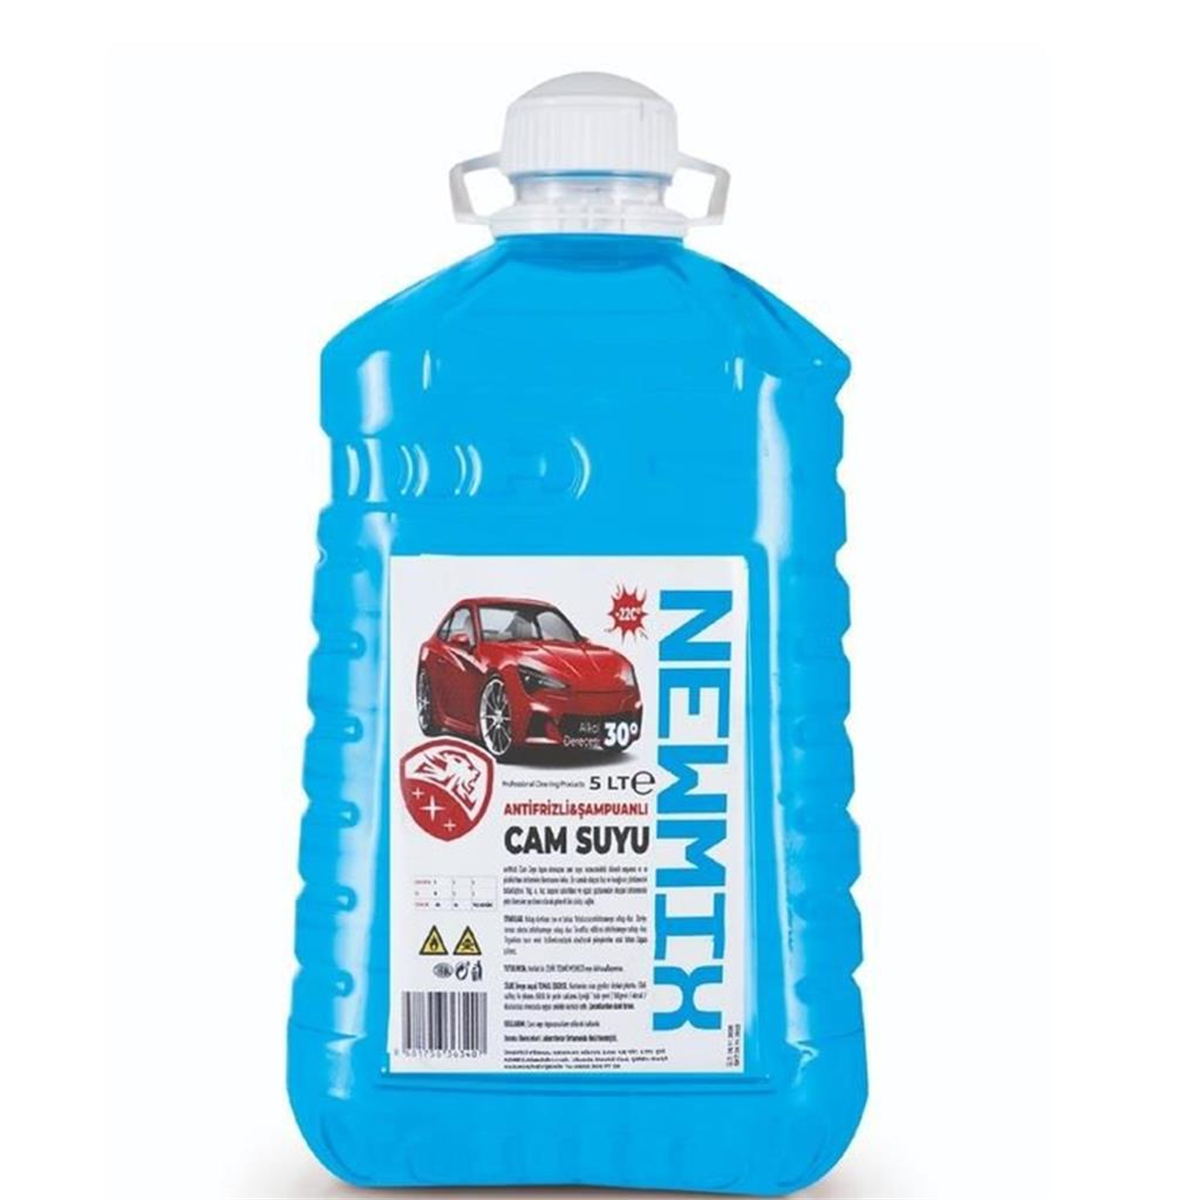 Newmix Antifirizli Cam Suyu 5 Kg 1 Ad. - Proteda.com | Ambalaj ve Temizlik  Ürünleri ve Fiyatları